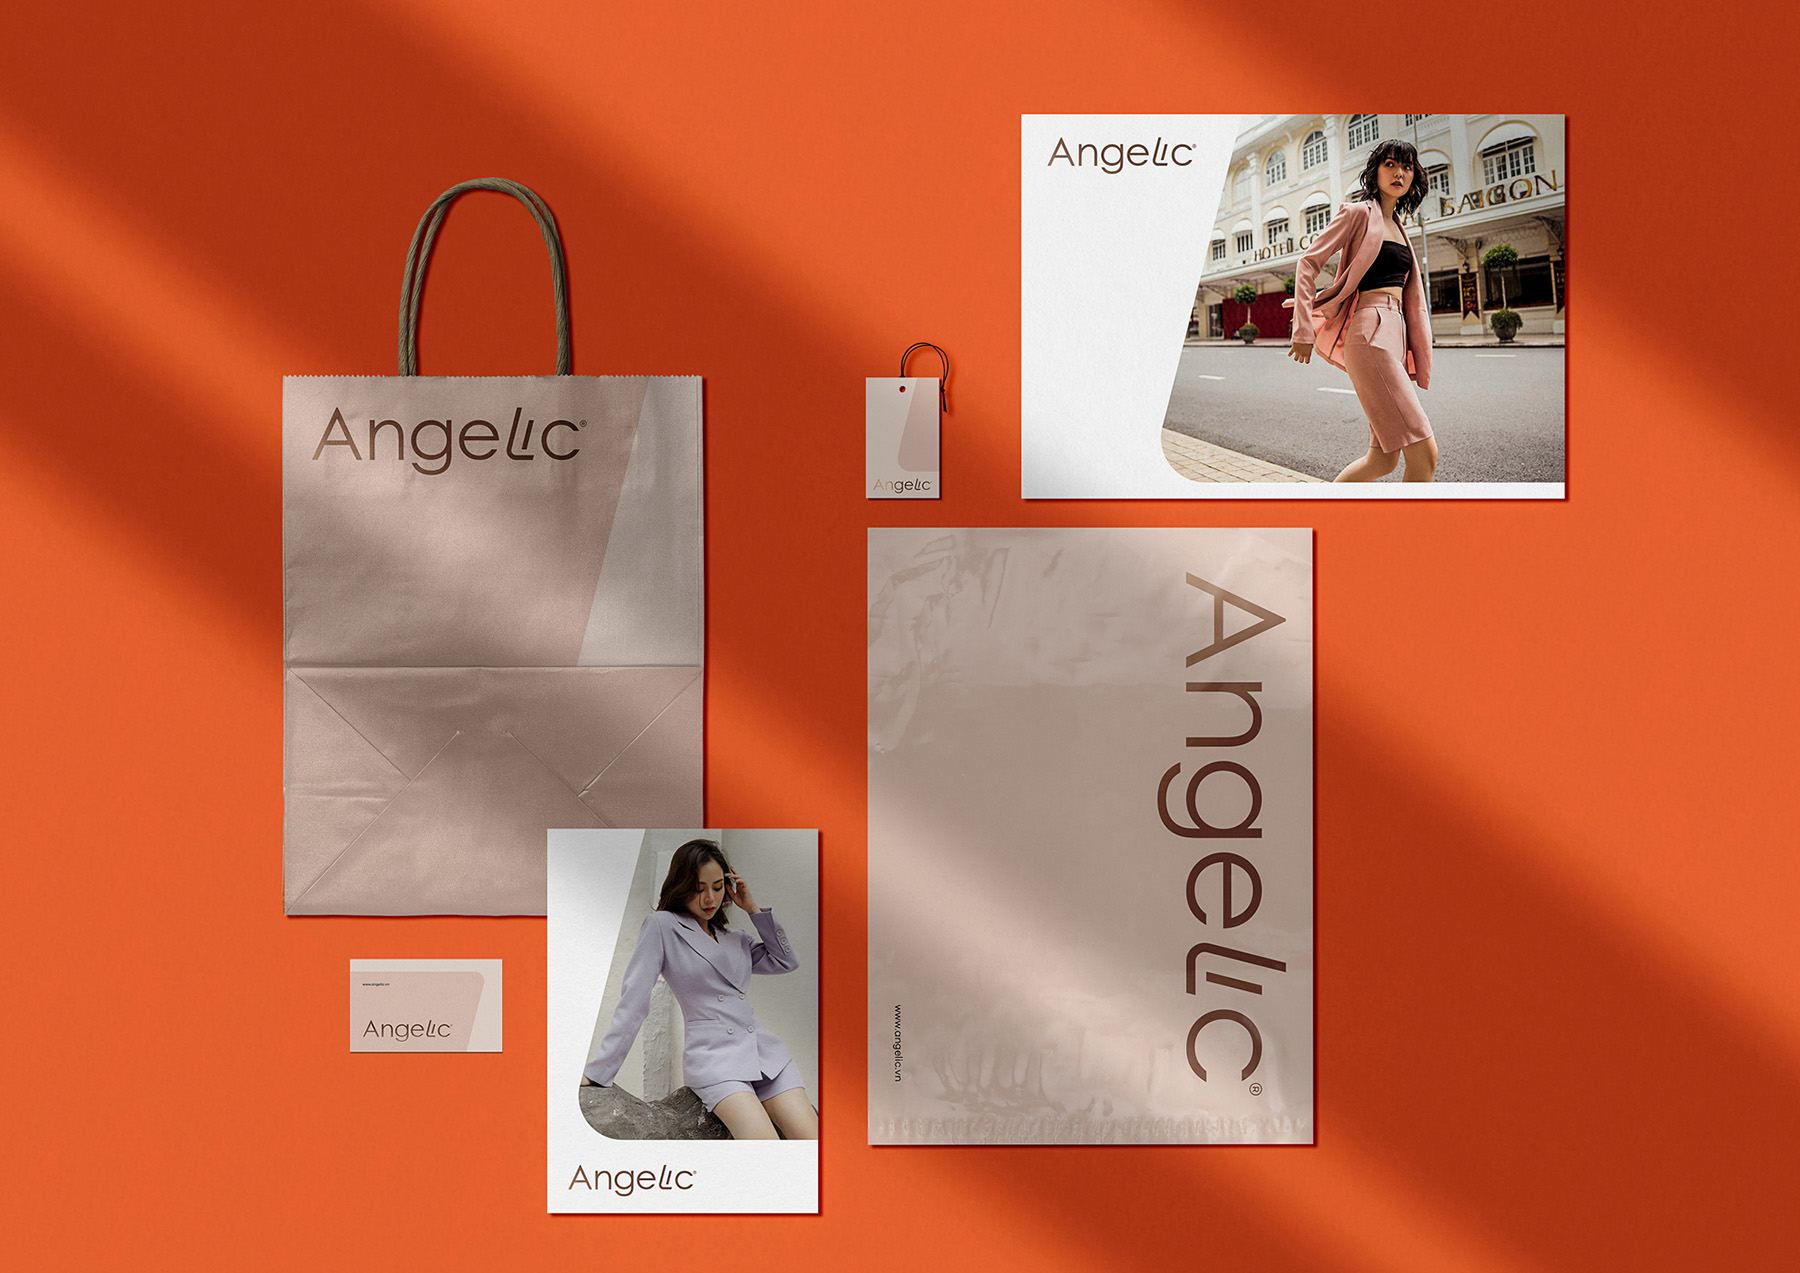 2-Angelic-world-brand-design.jpg